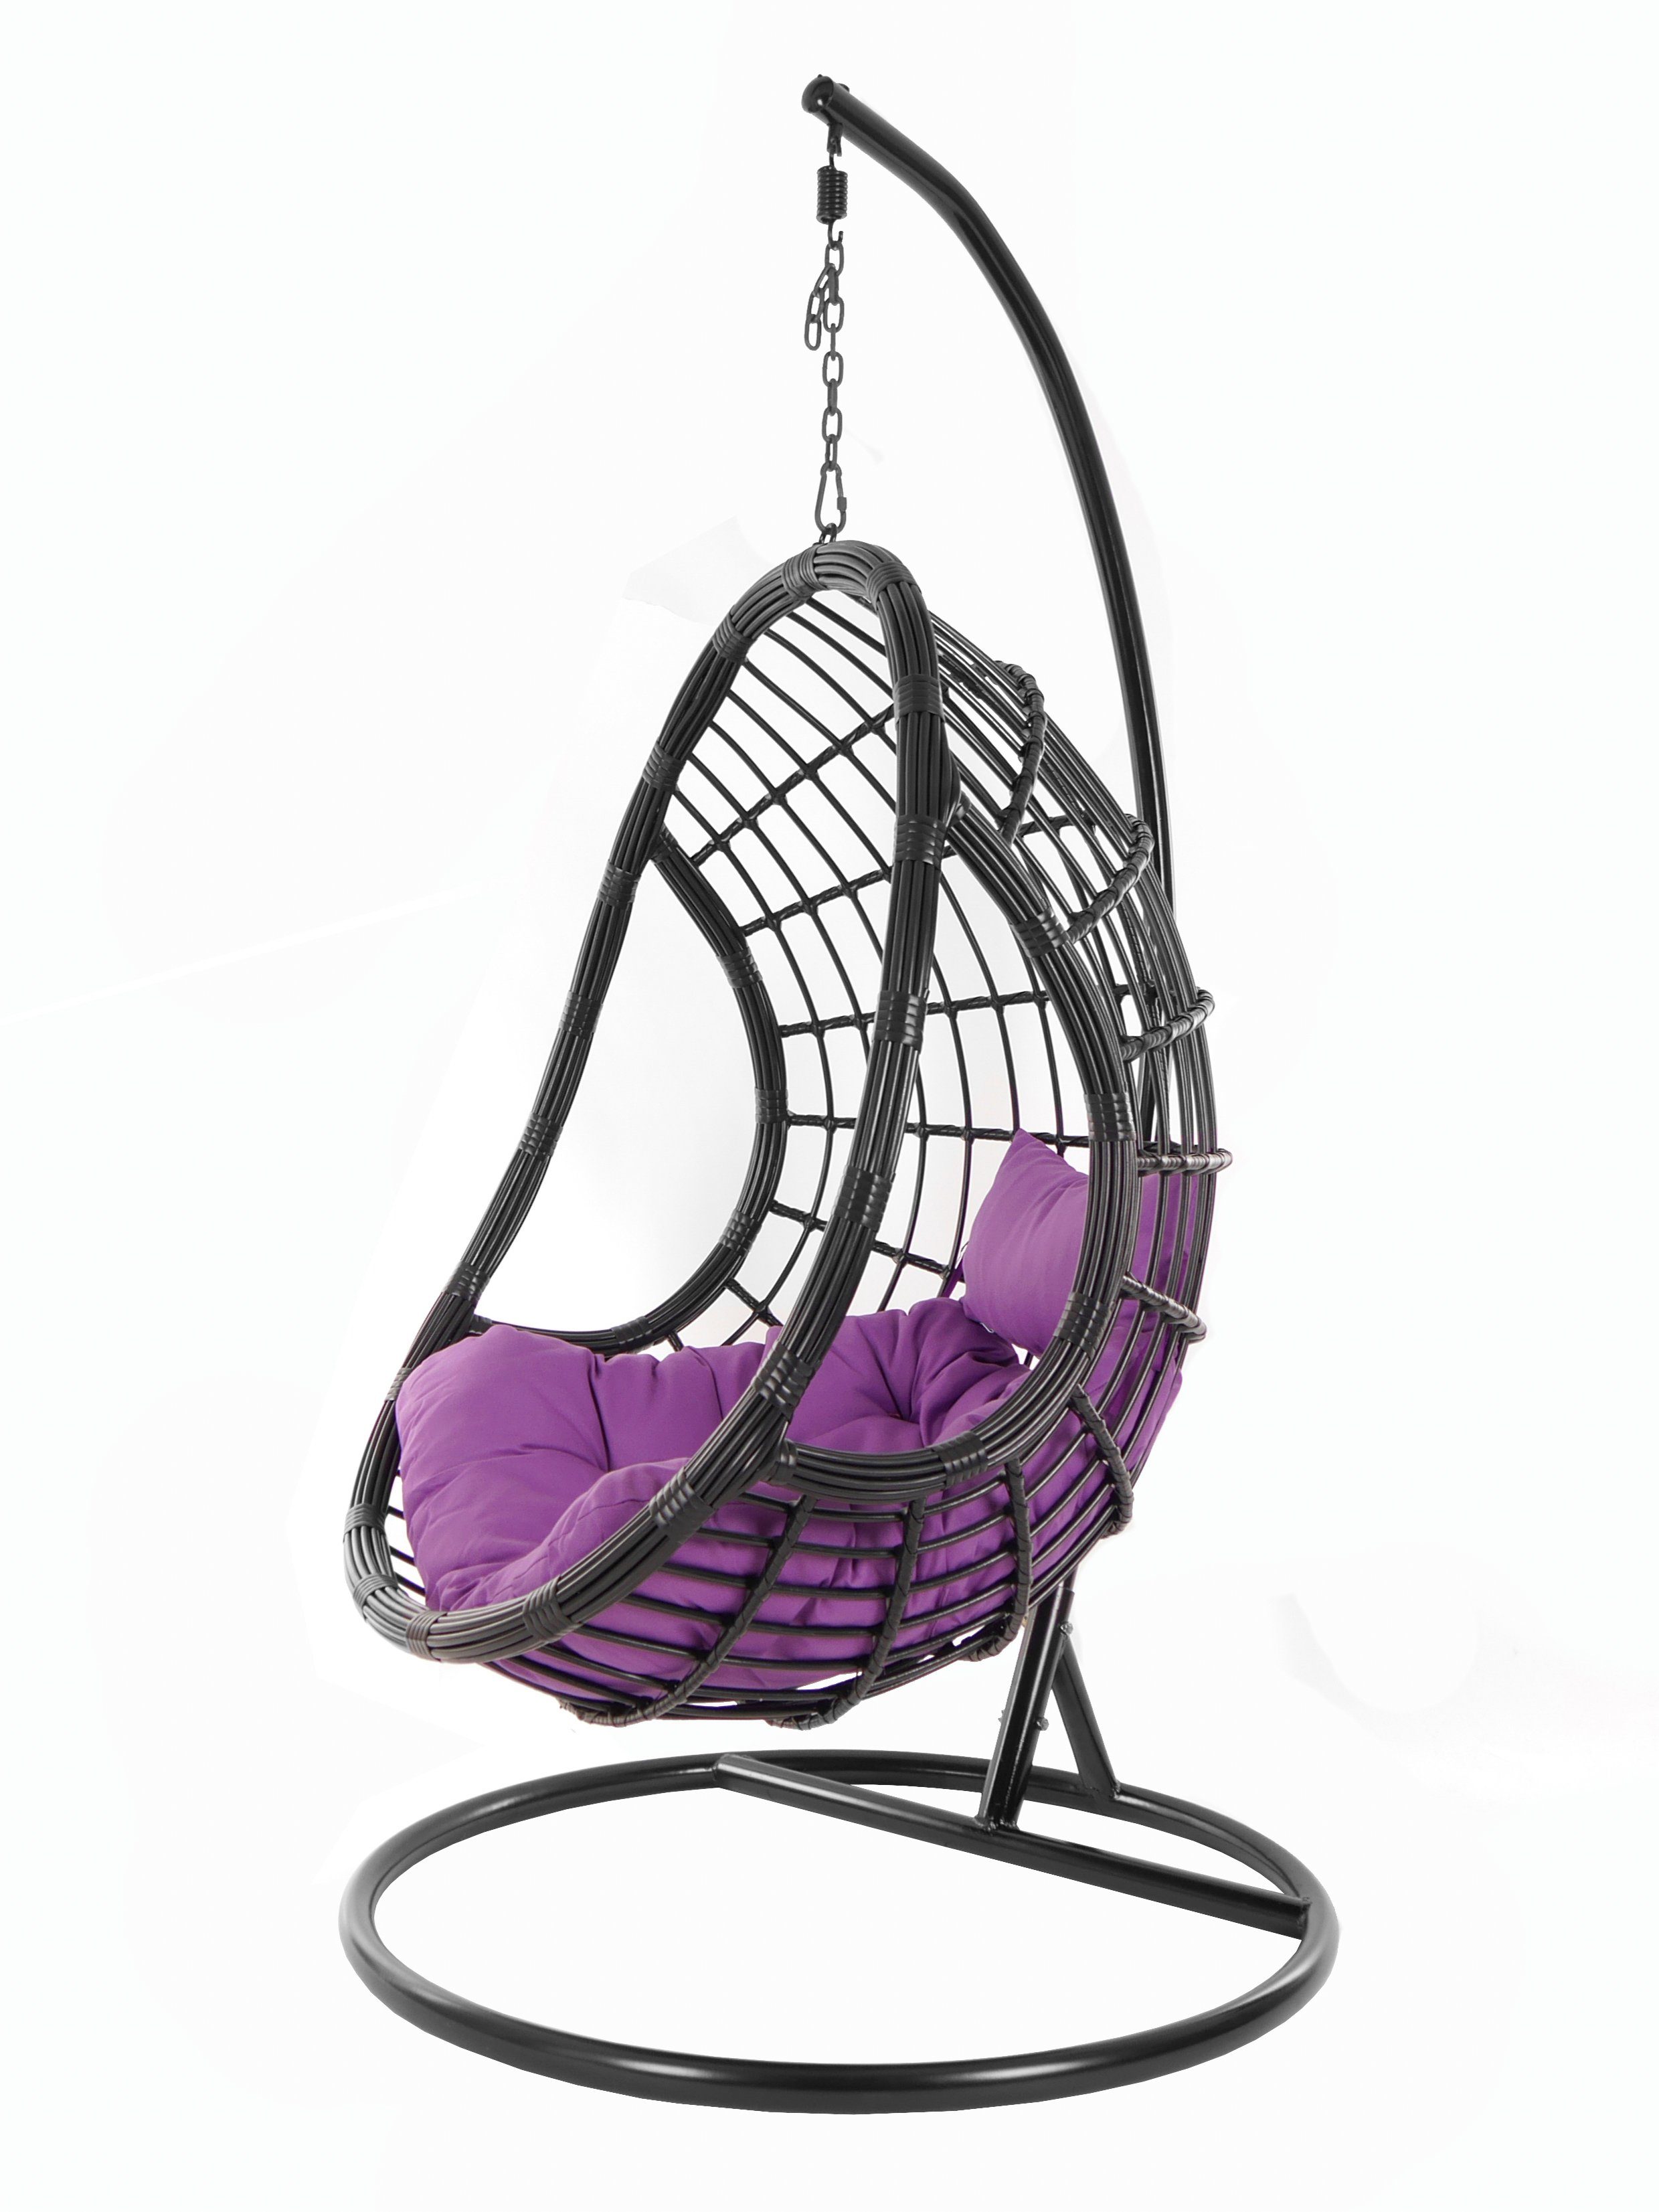 KIDEO Hängesessel PALMANOVA black, Swing Chair, schwarz, Loungemöbel, Hängesessel mit Gestell und Kissen, Schwebesessel, edles Design lila (4050 violet)